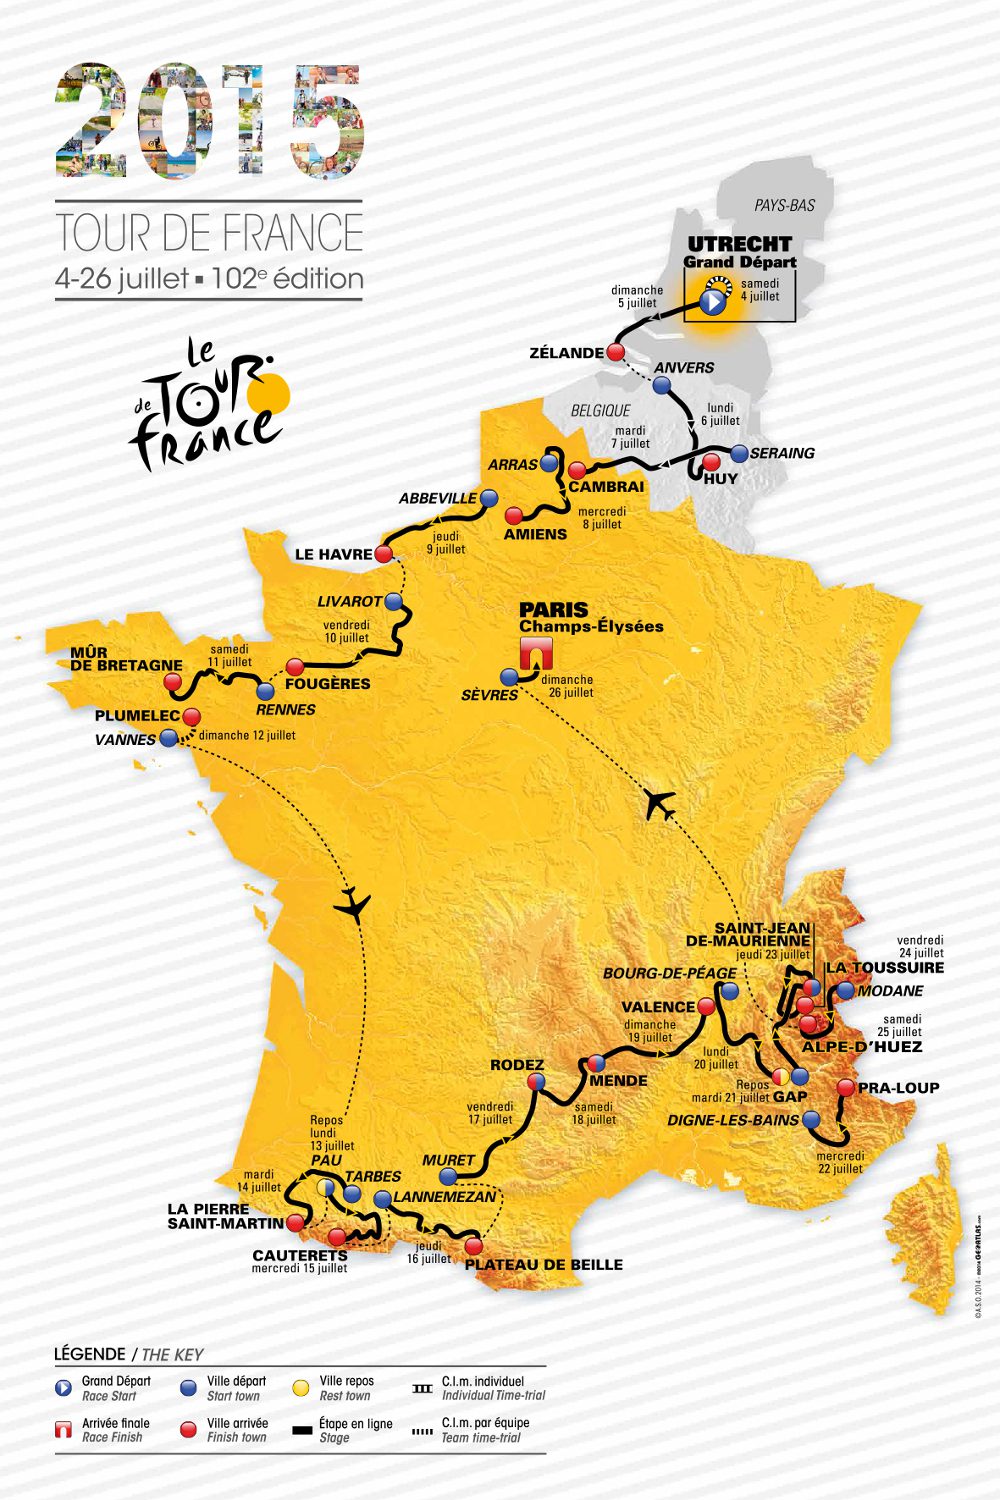 2015 Tour de France route